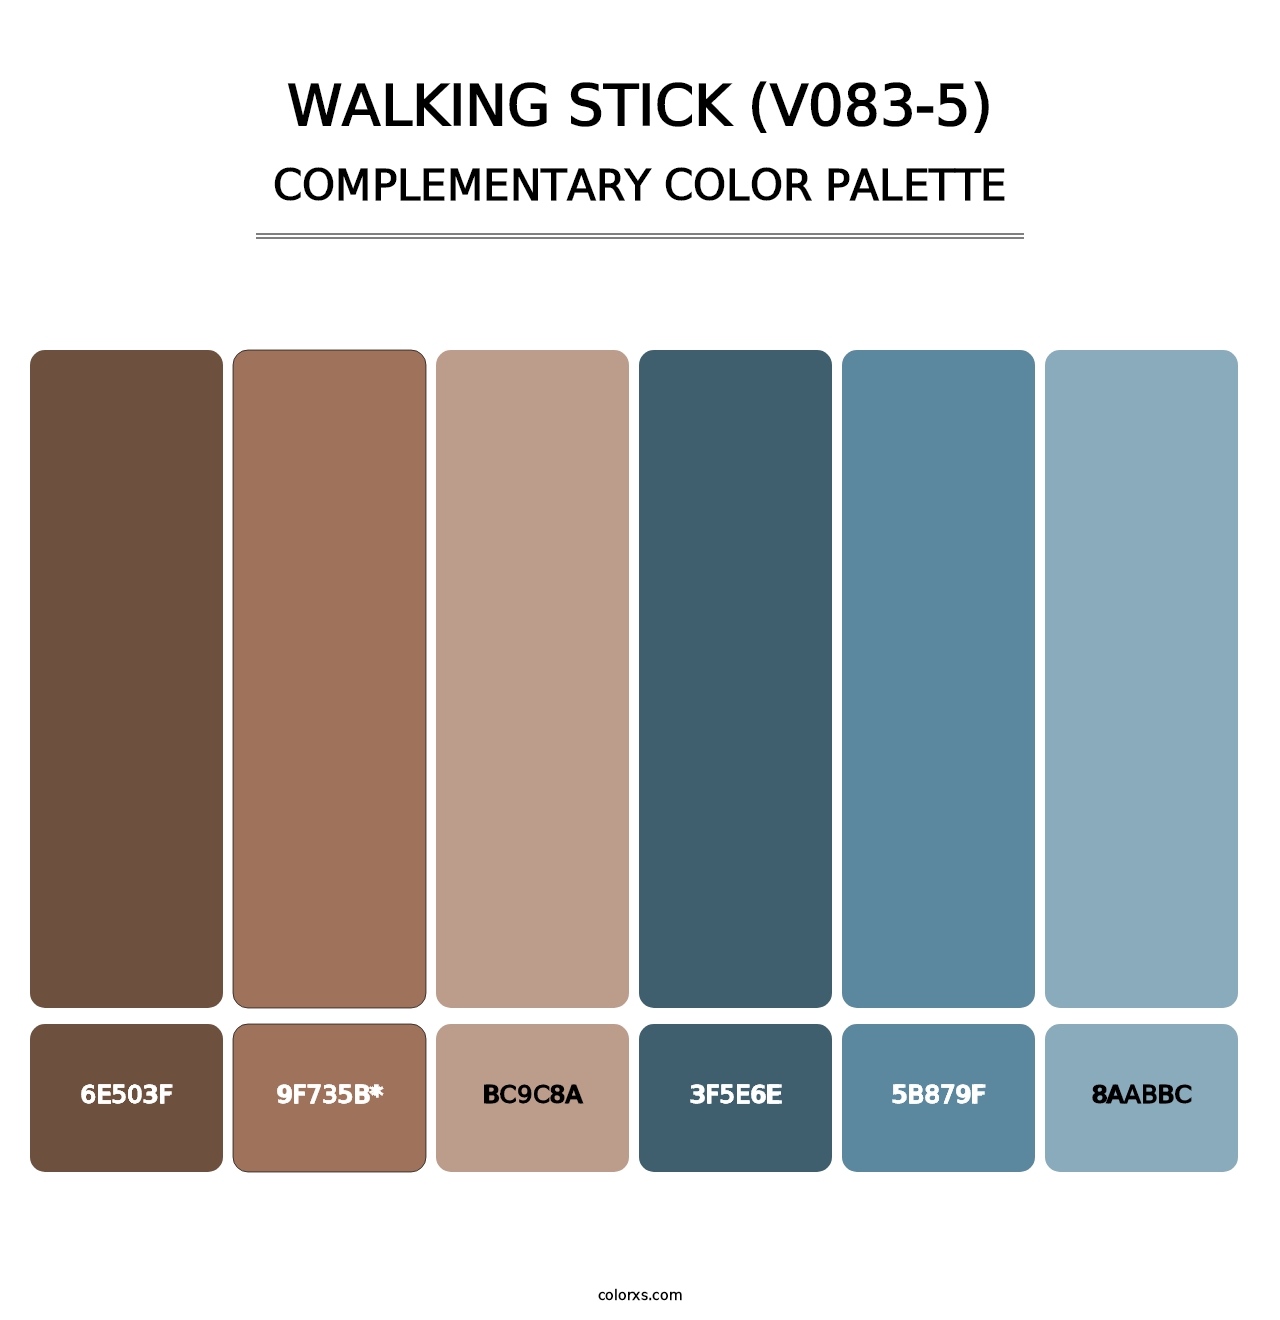 Walking Stick (V083-5) - Complementary Color Palette